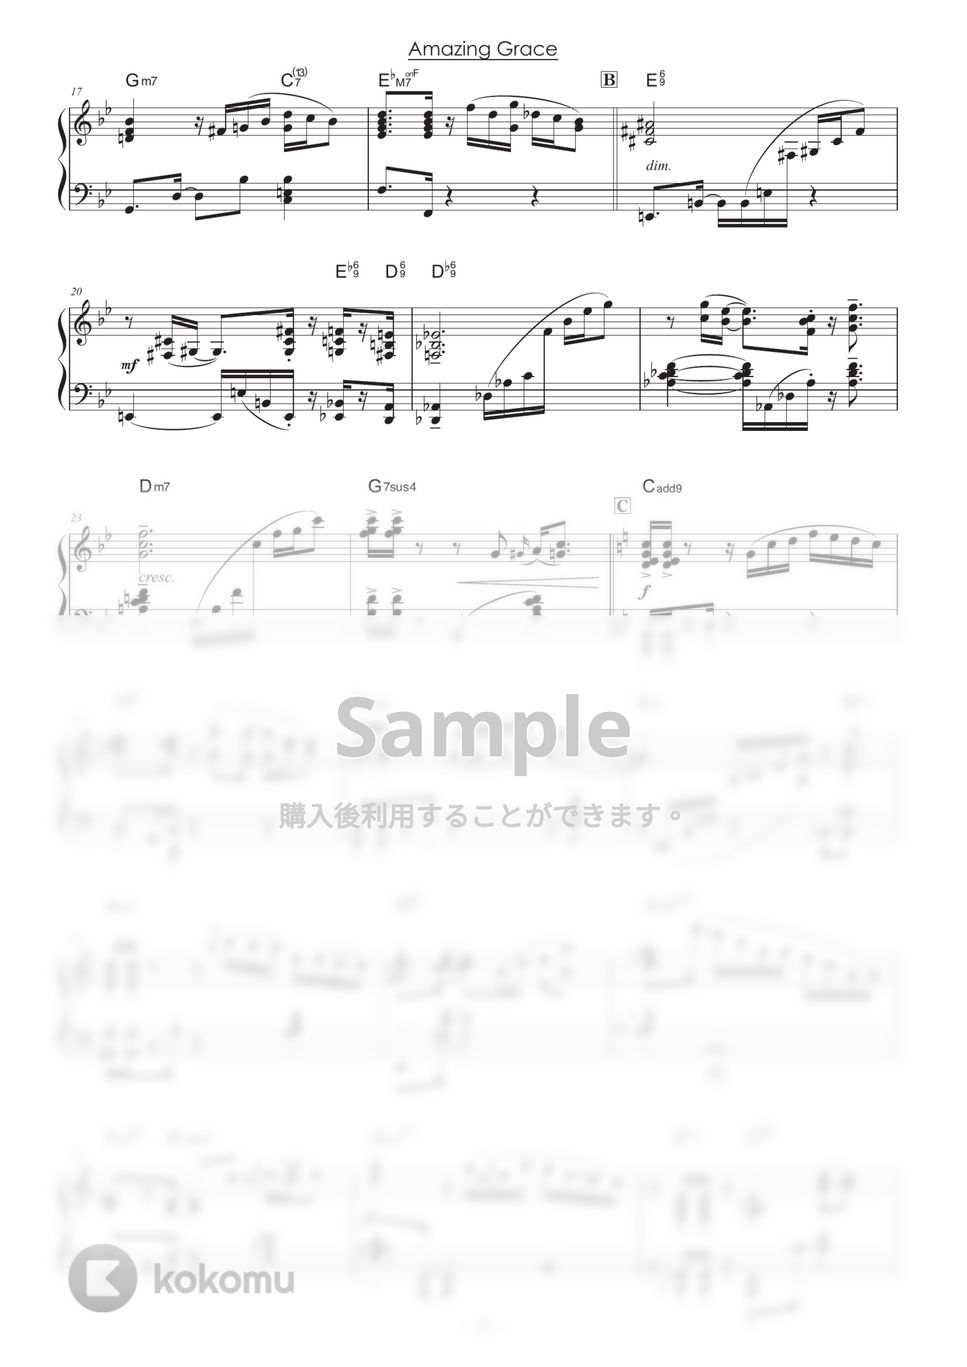 讃美歌 - アメイジング・グレイス (ピアノ上級（16ビート）) by 山本雅一